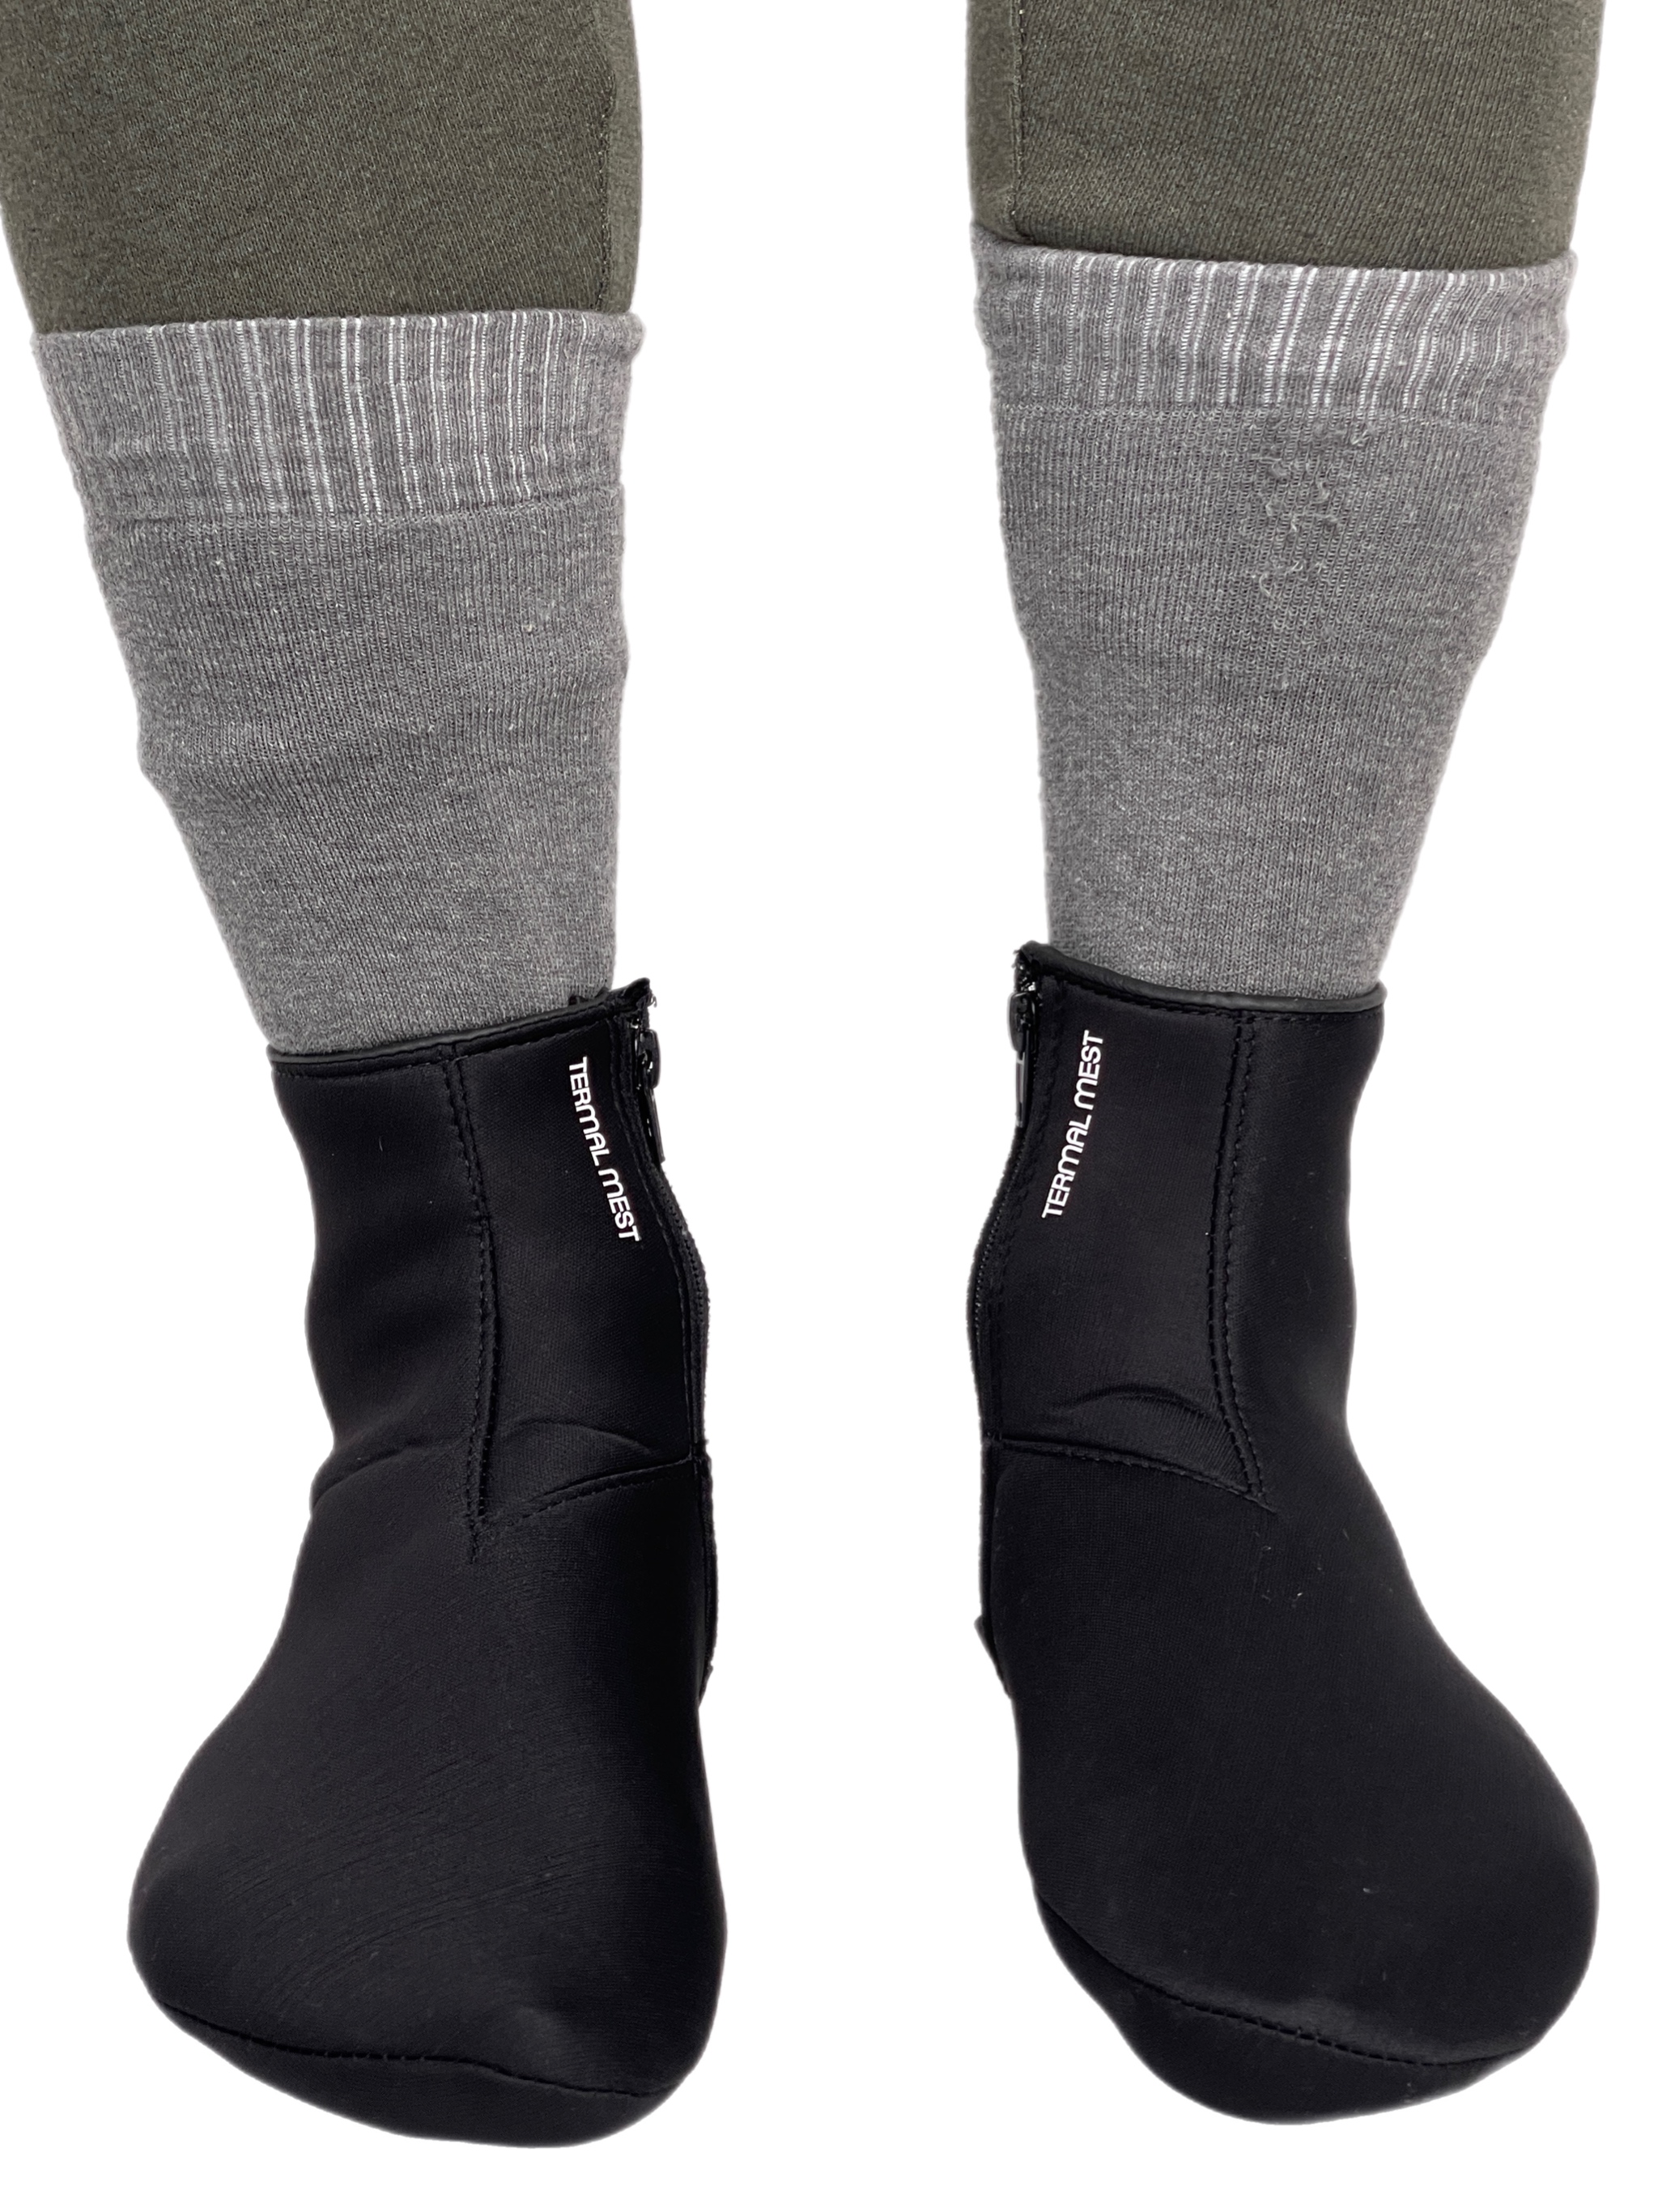 Термошкарпетки Intruder Thermal Mest чорні зі змійкою 41-42 (1887622187/1)